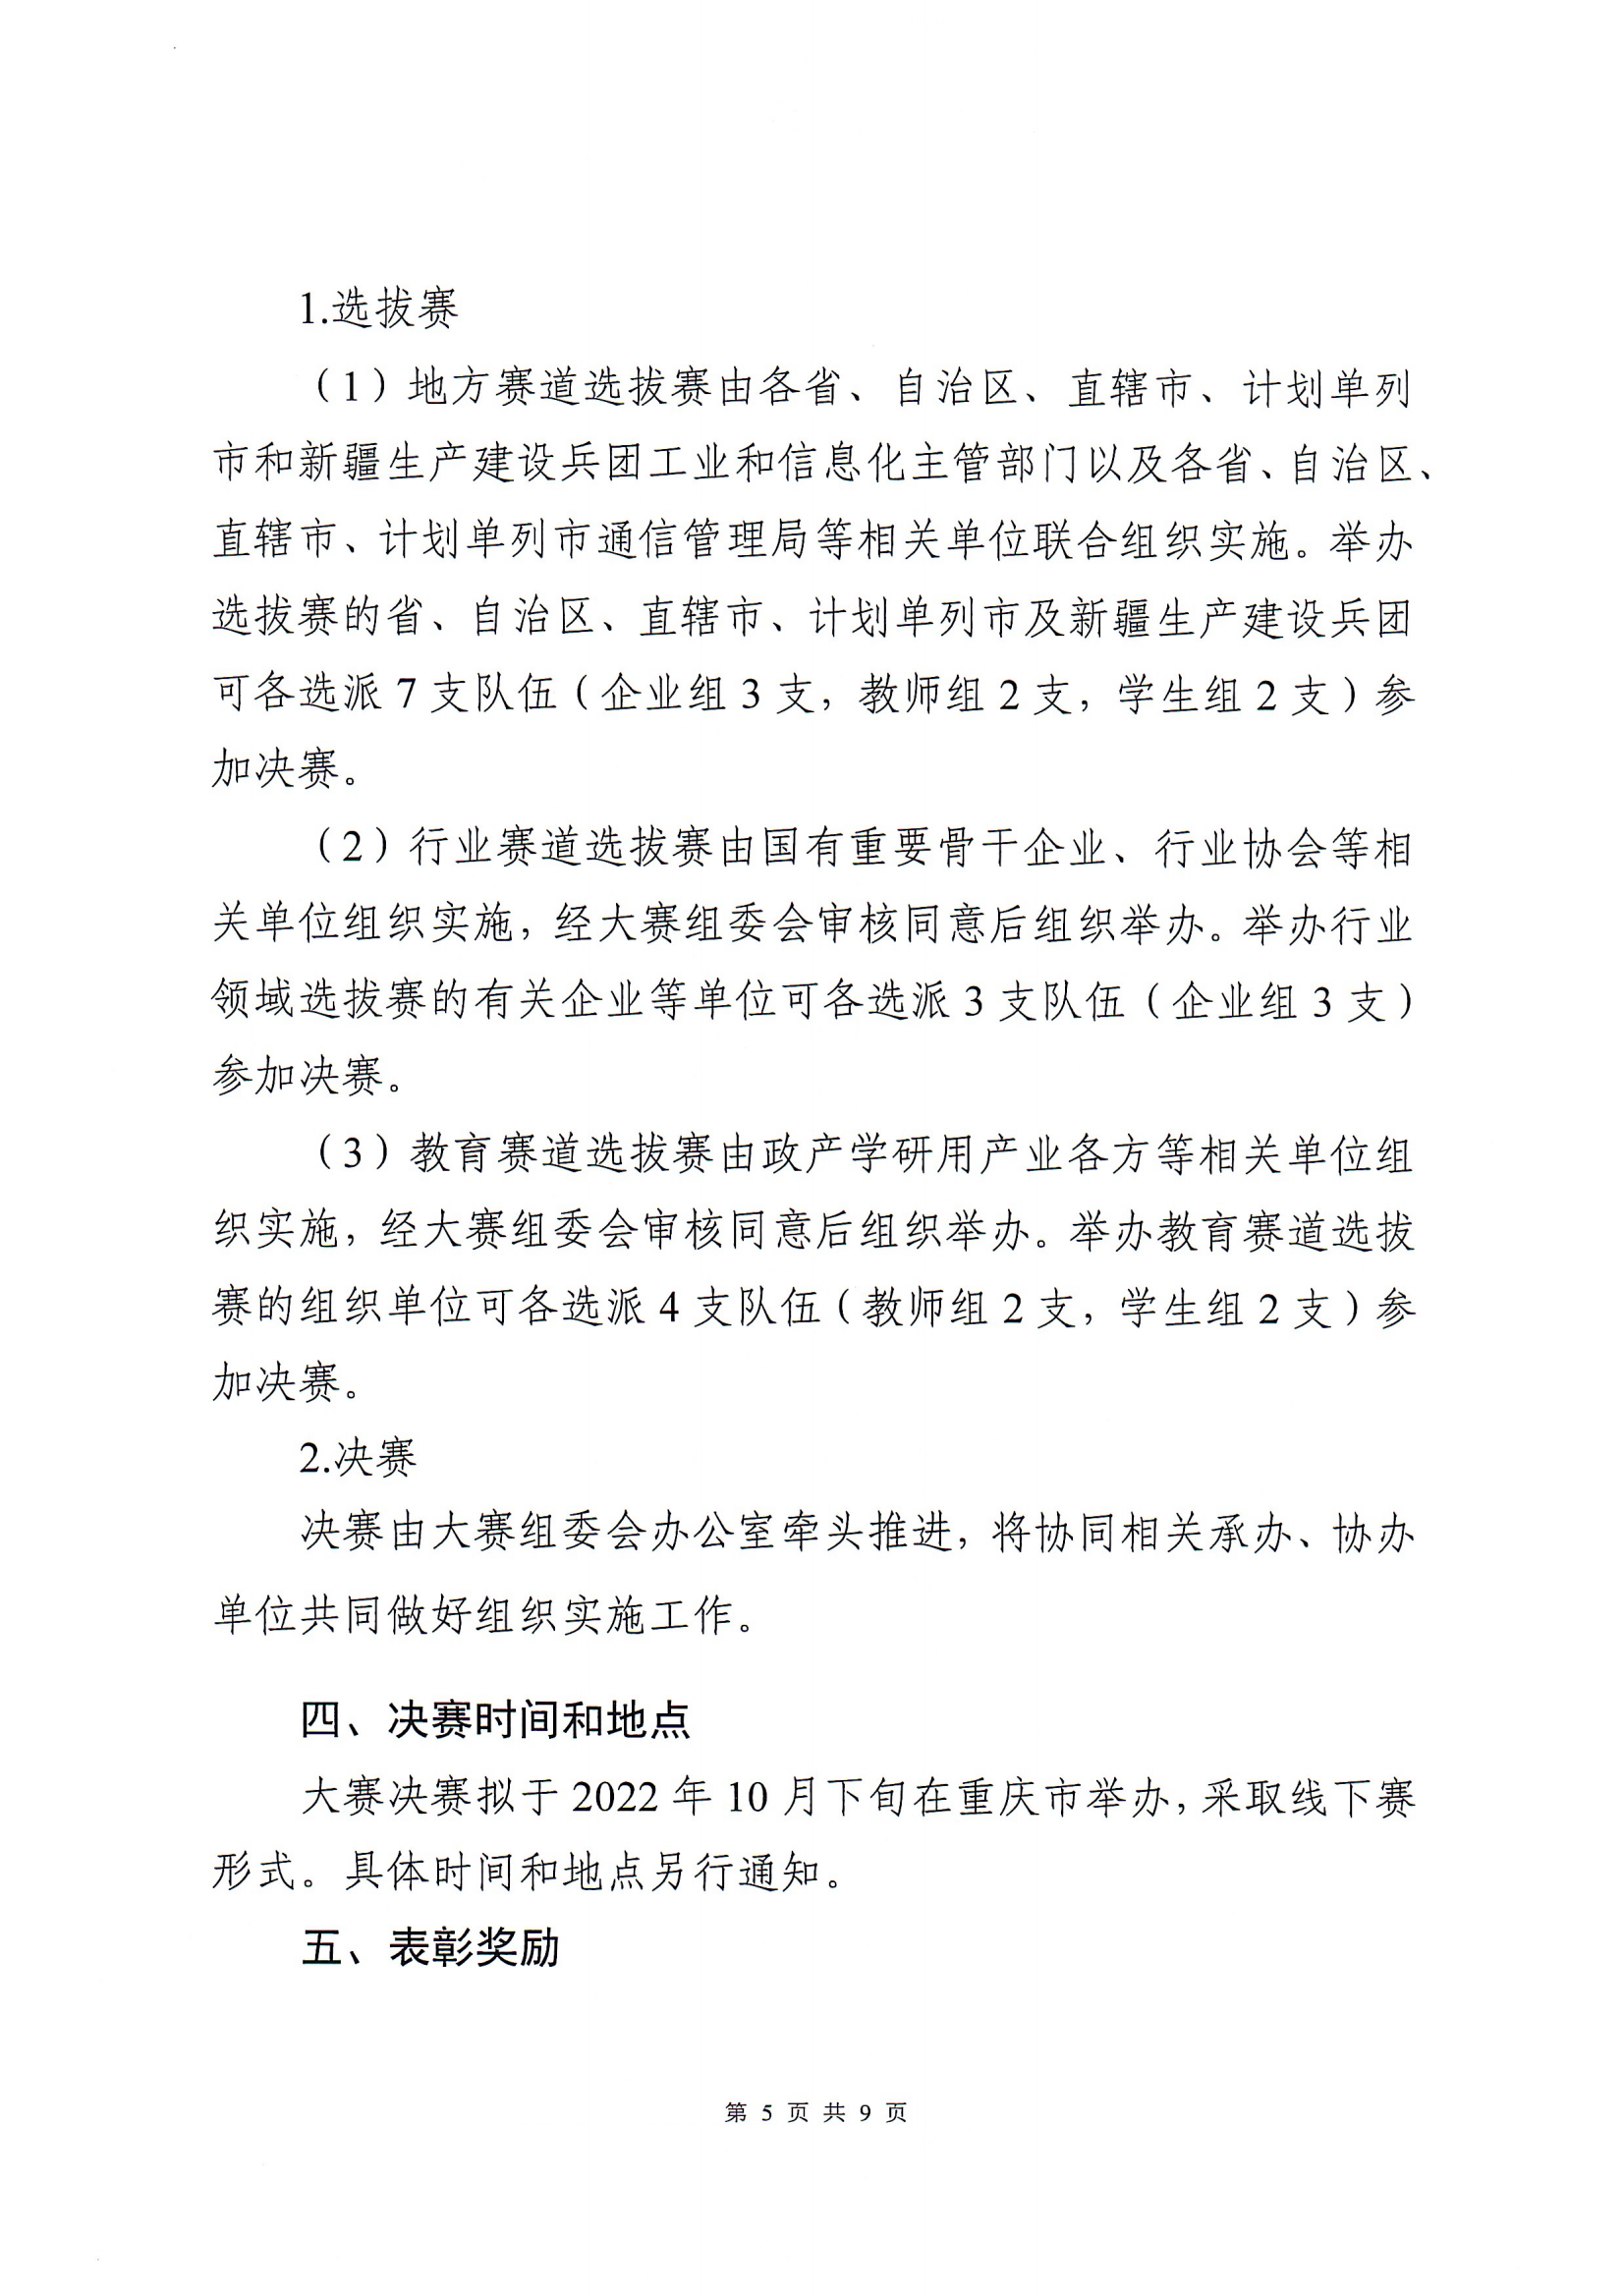 关于举办2022年中国工业互联网安全大赛的通知PDF带章版_04.png